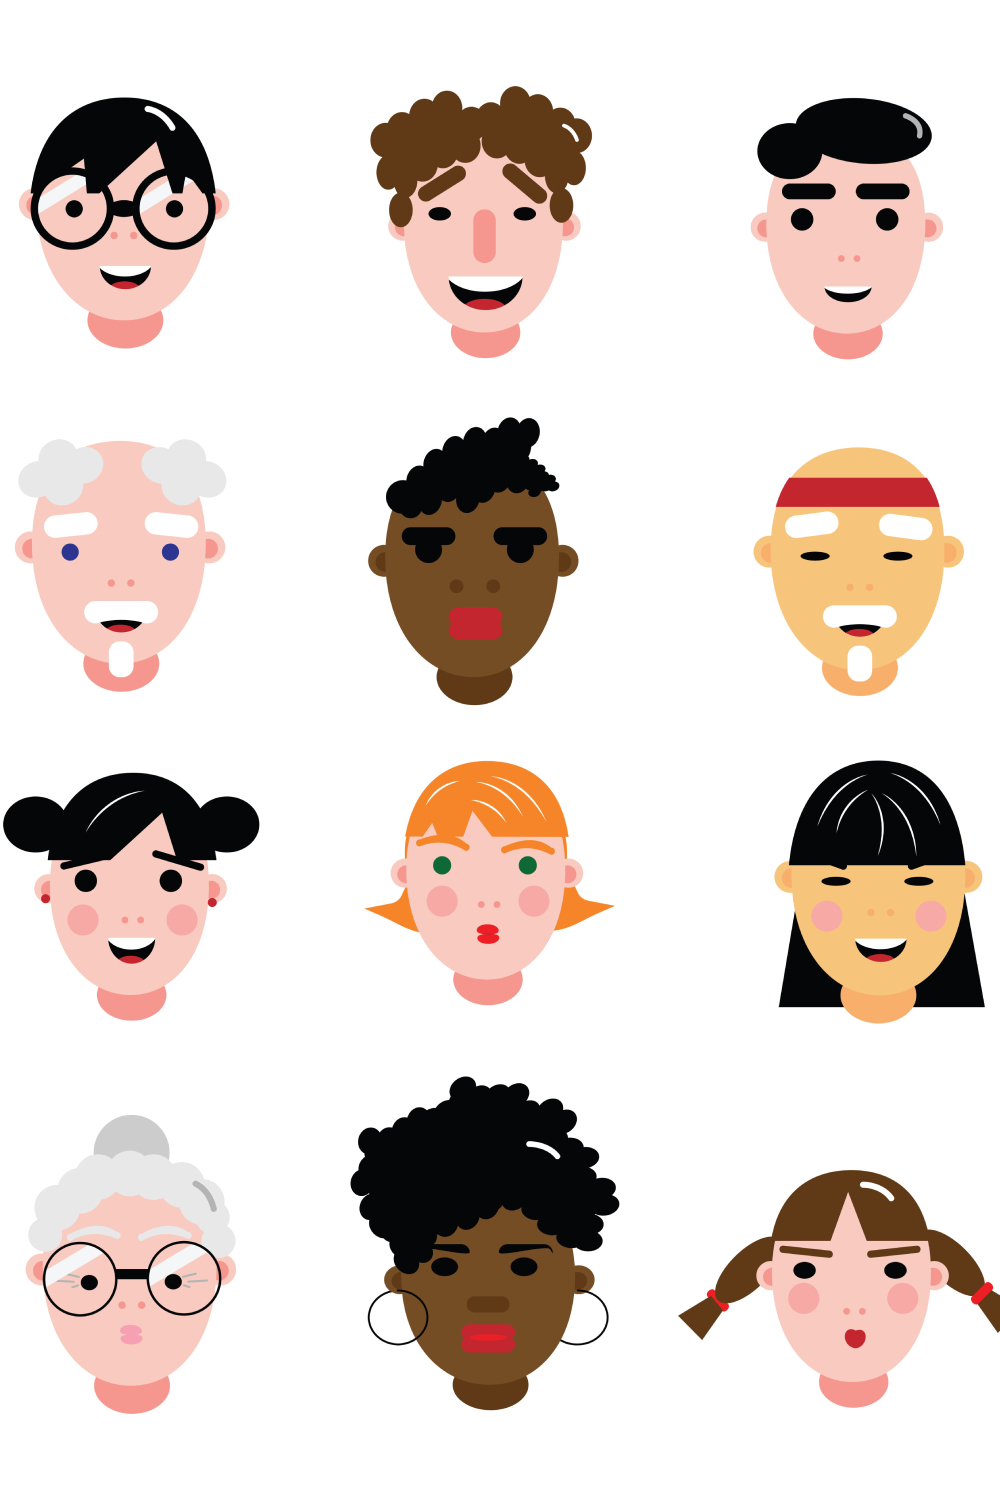 Human Faces Set Pinterest Cover.